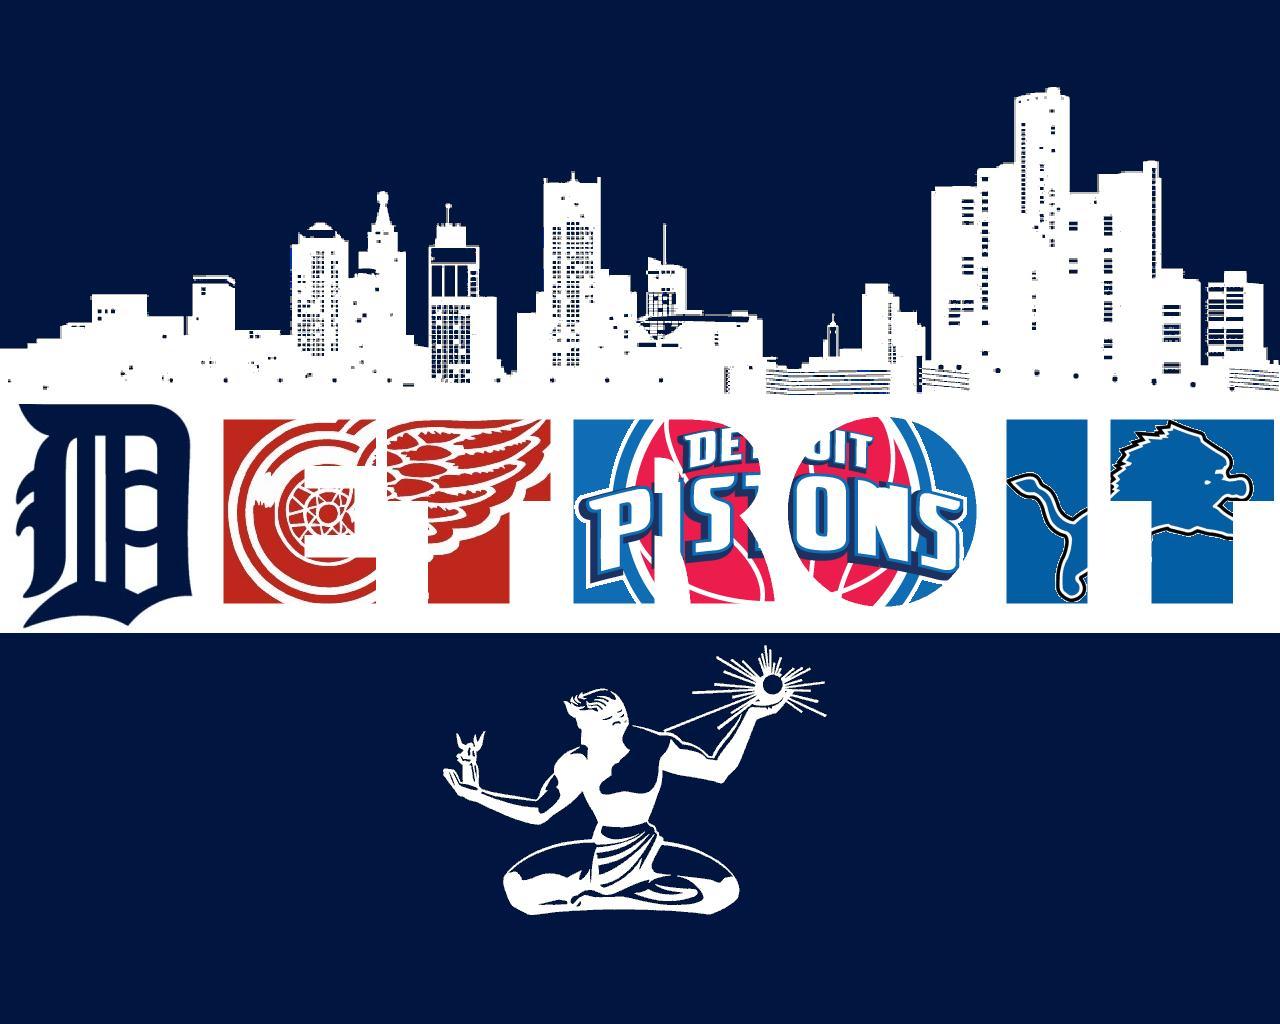 Detroit Pistons Wallpaper Background